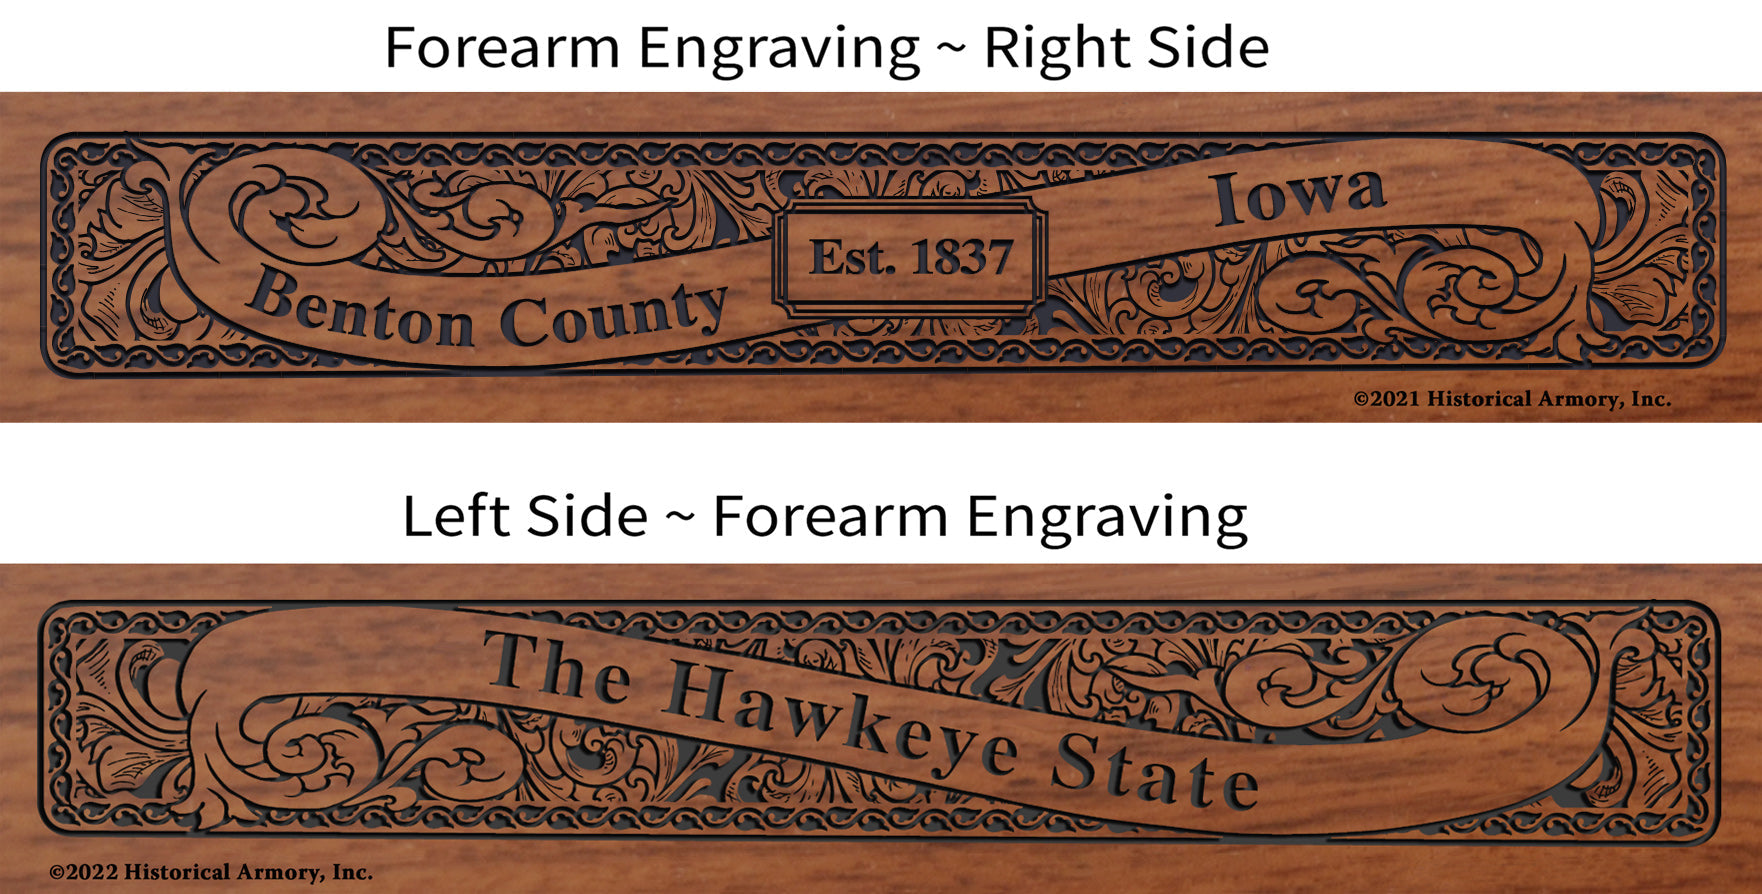 Benton County Iowa Engraved Rifle Forearm